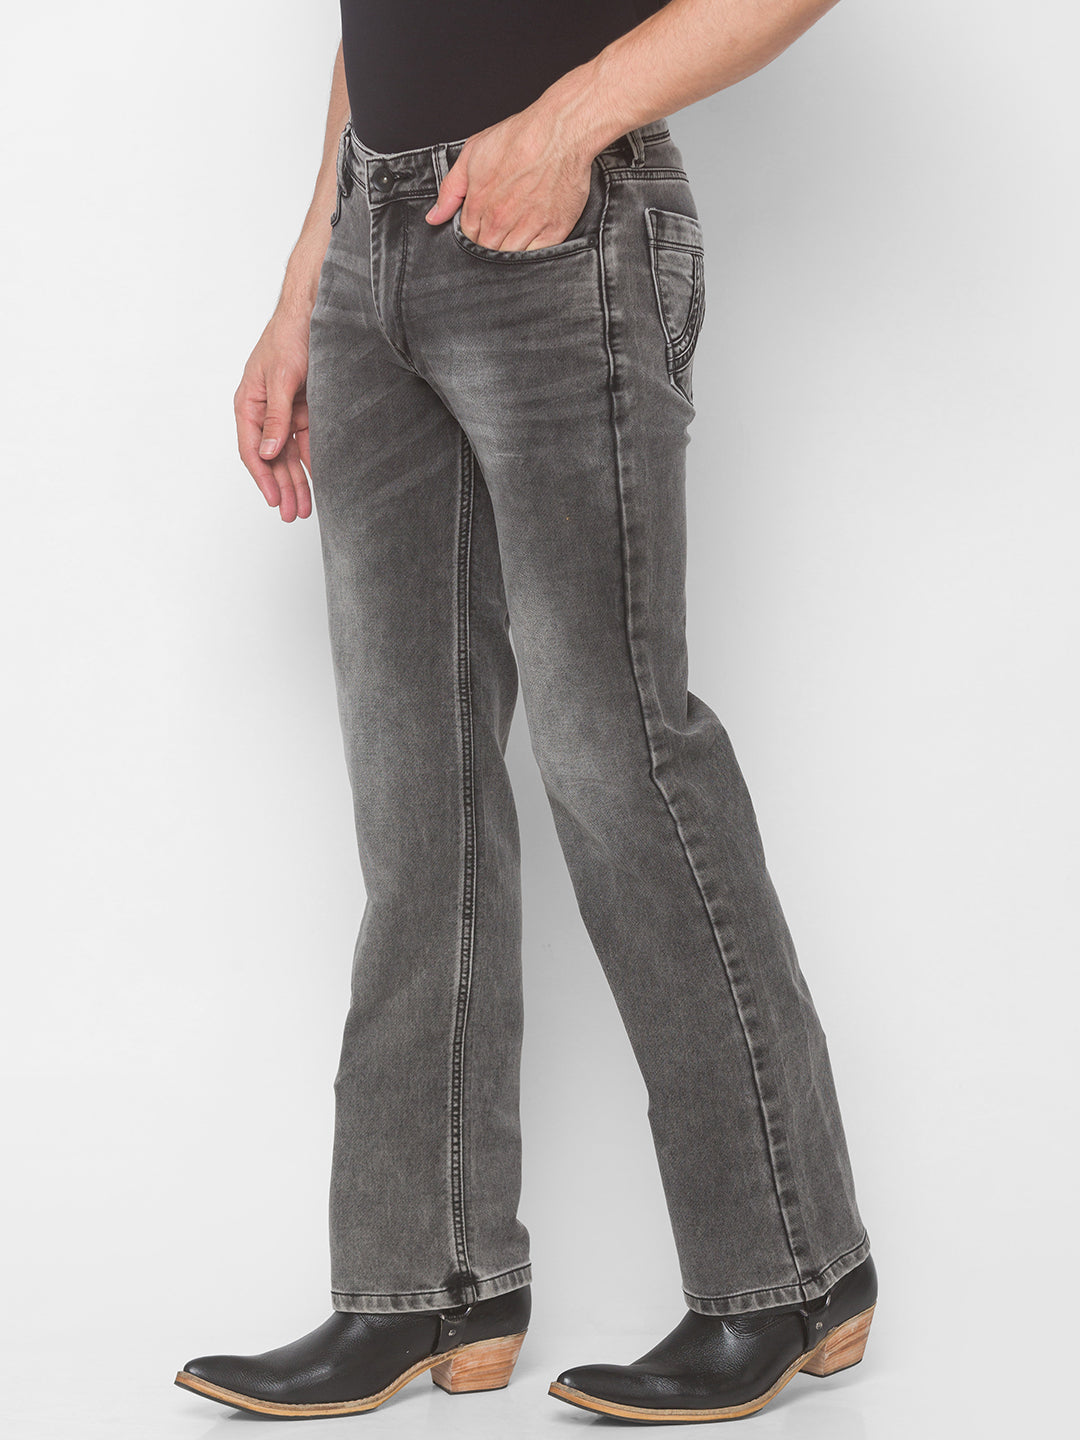 Levis Jeans Mens W34 Blue 515 Bootcut Leg Denim Pants Work Wear Cotton –  Goodfair